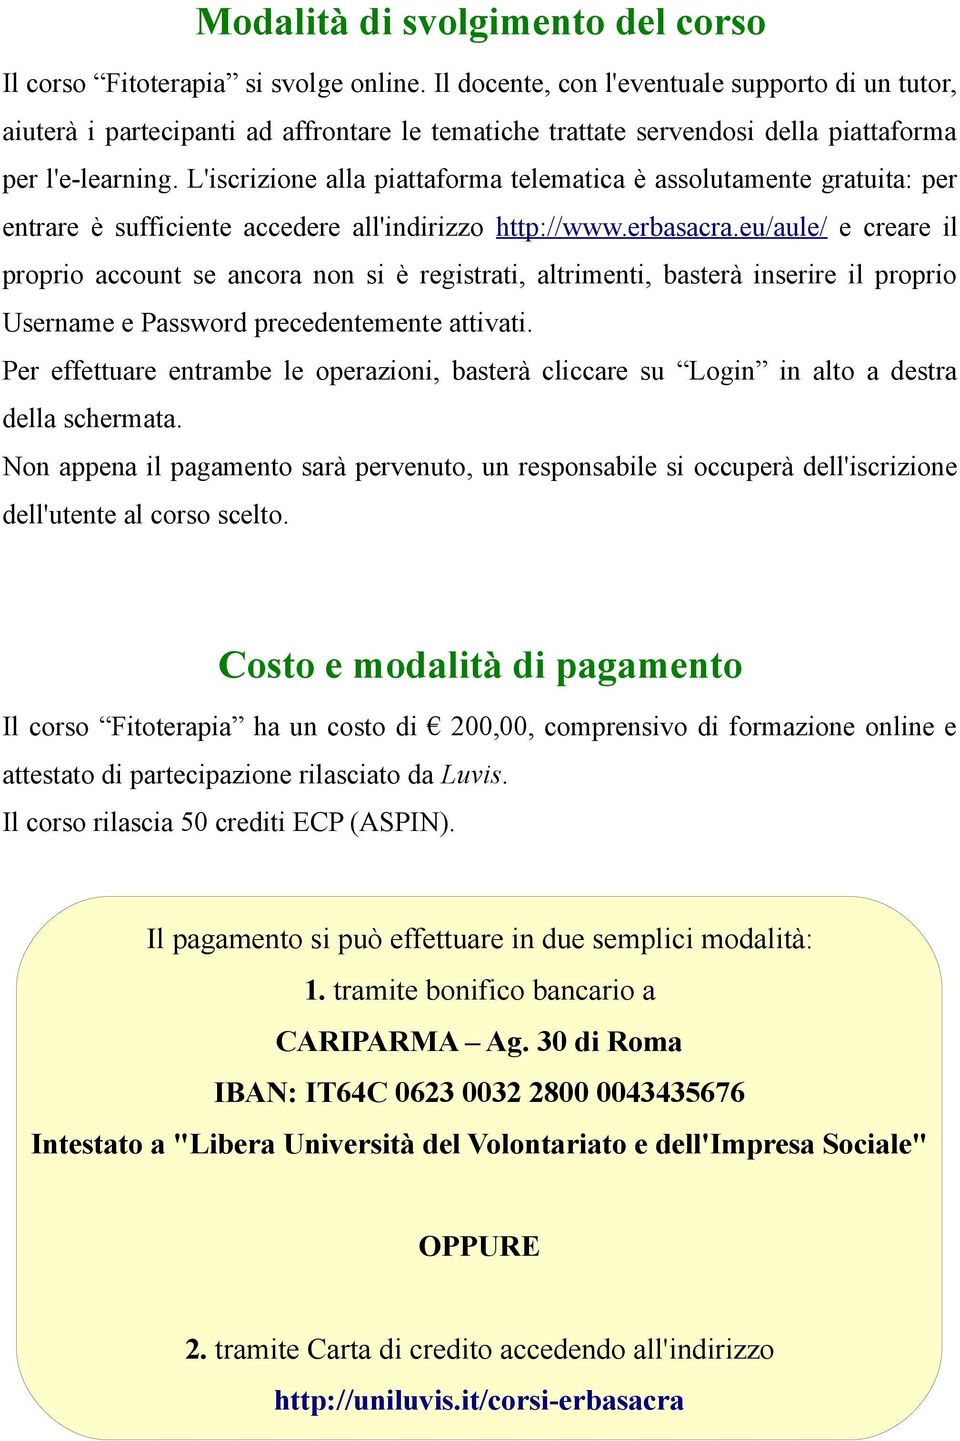 L'iscrizione alla piattaforma telematica è assolutamente gratuita: per entrare è sufficiente accedere all'indirizzo http://www.erbasacra.